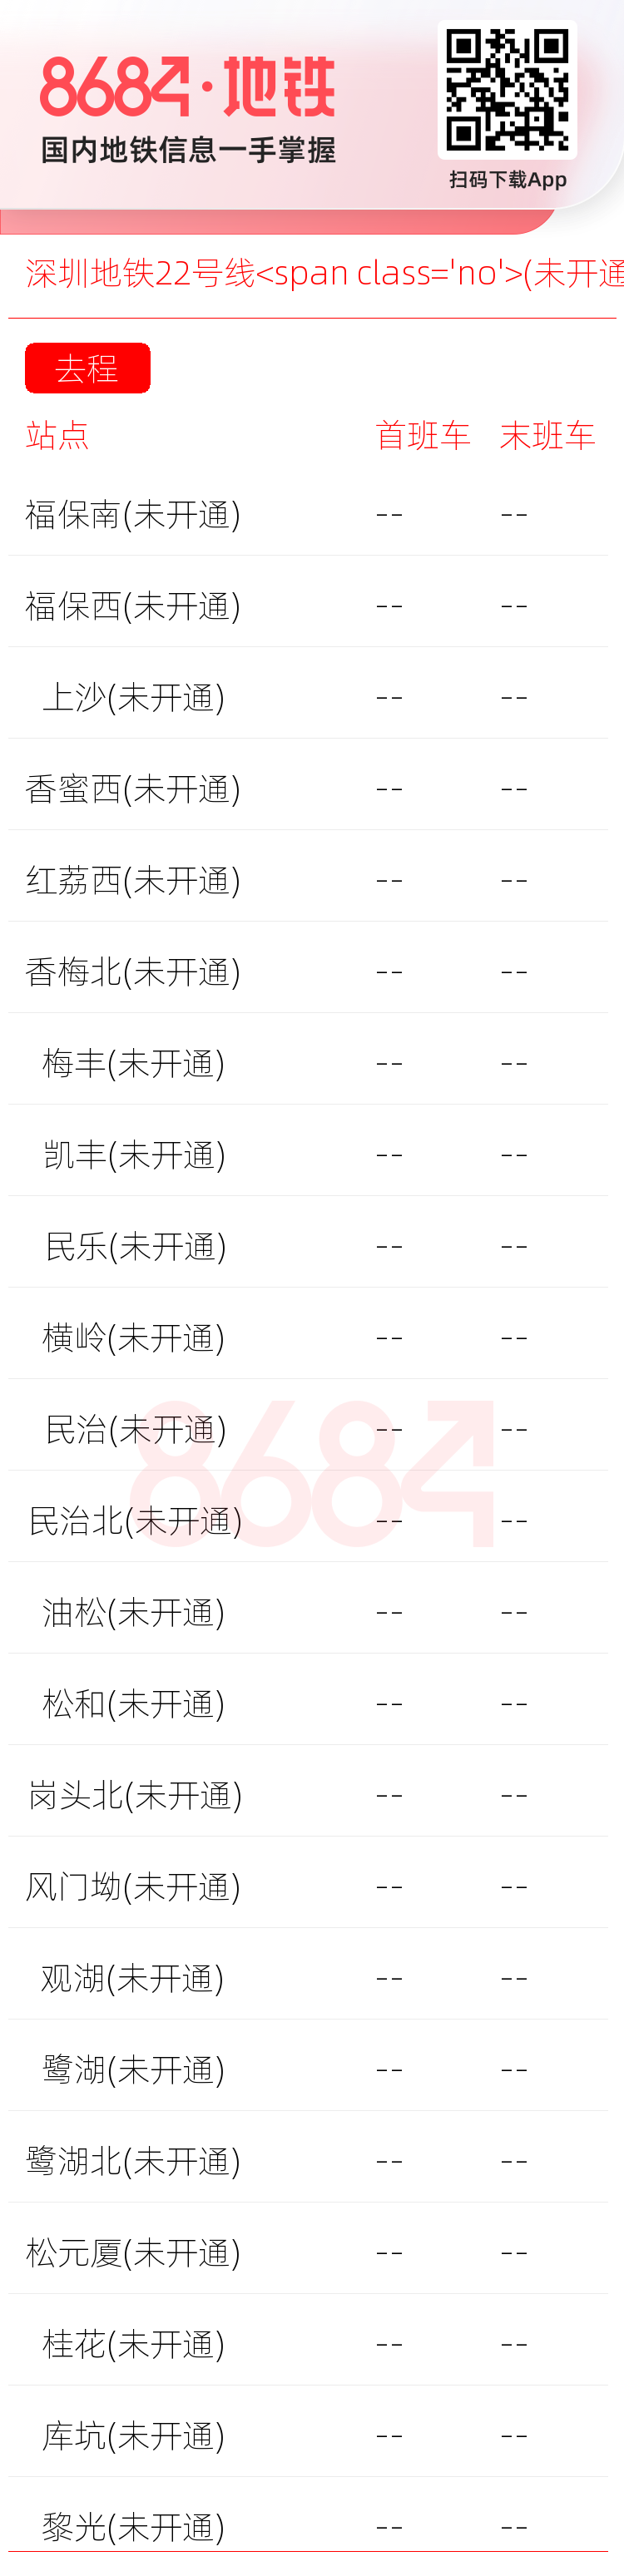 深圳地铁22号线<span class='no'>(未开通)</span>运营时间表